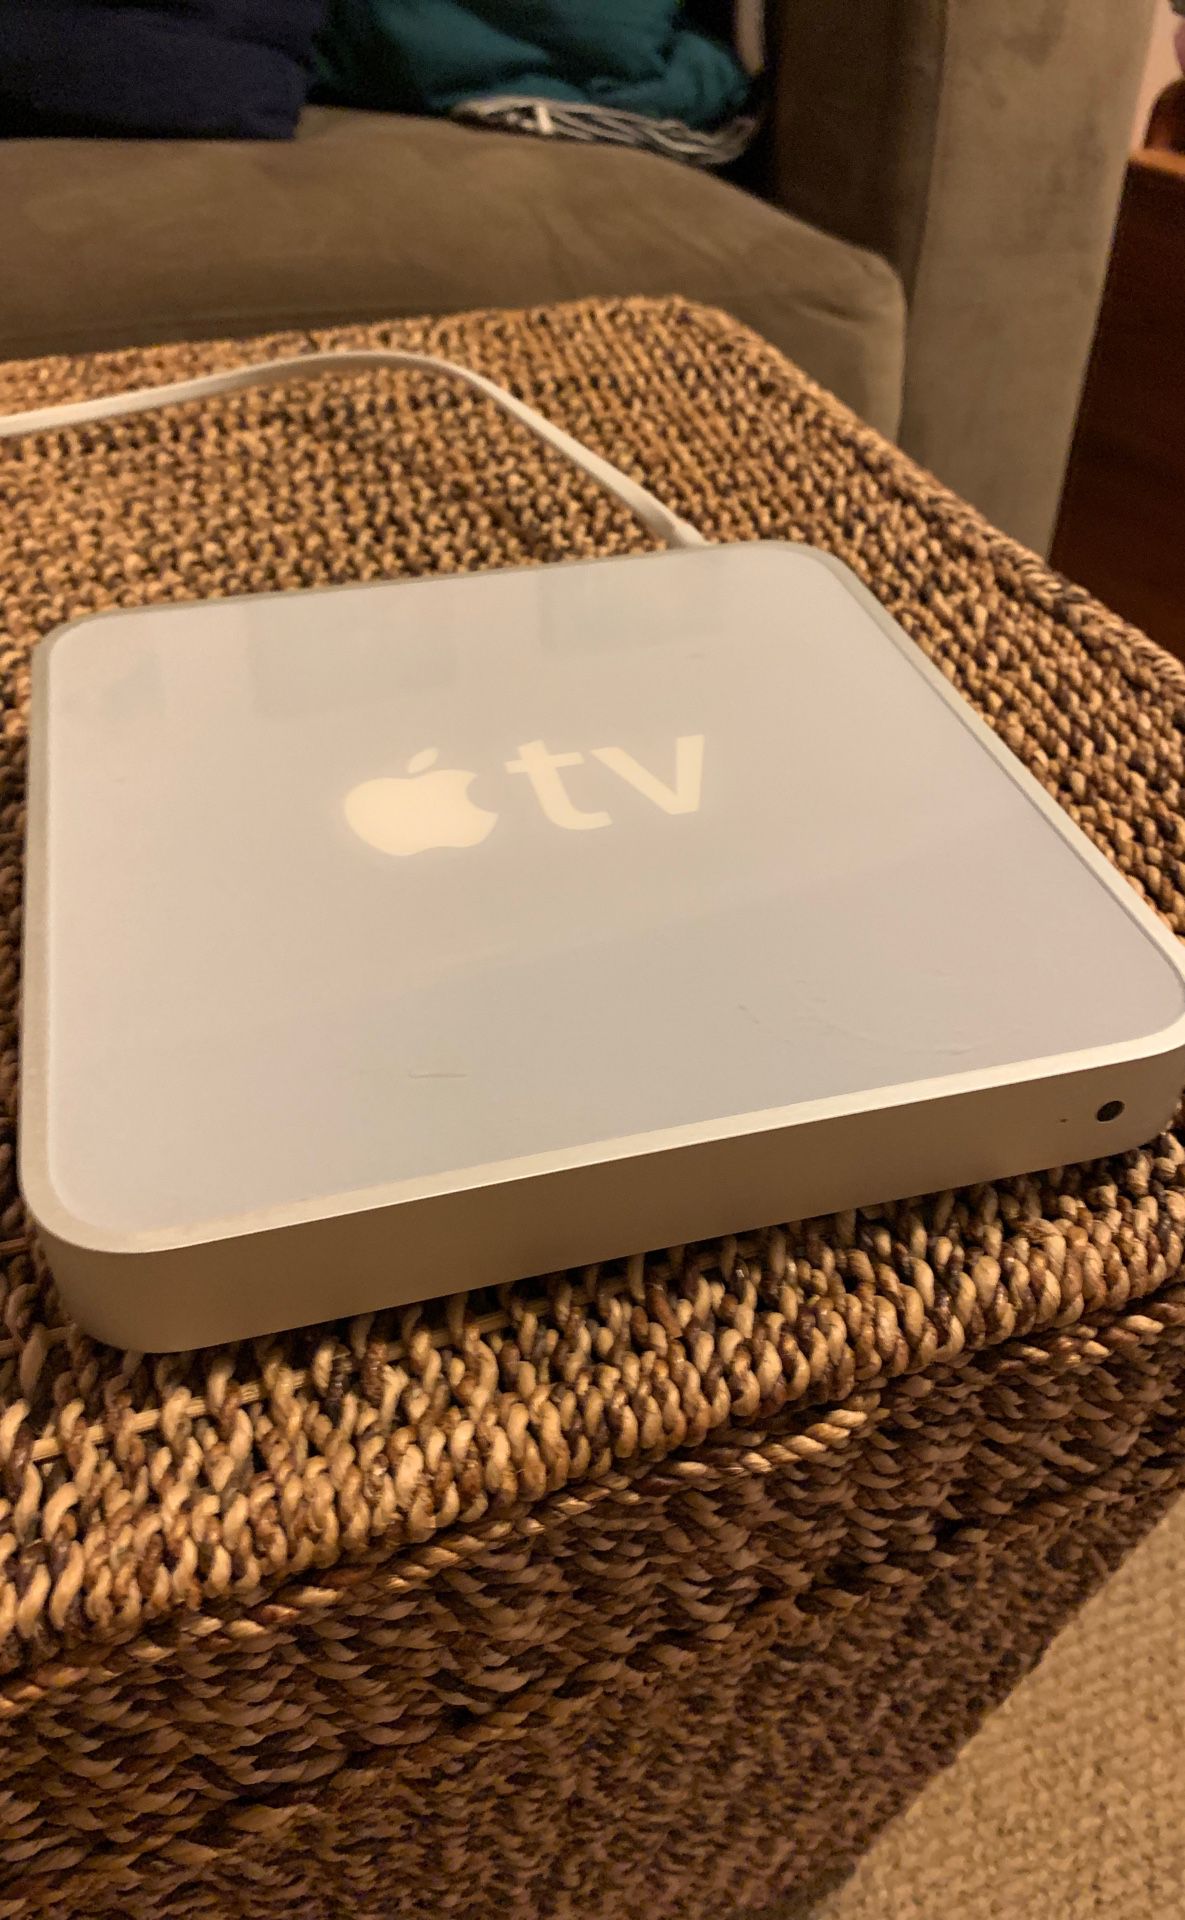 Apple TV 1st Gen. $20